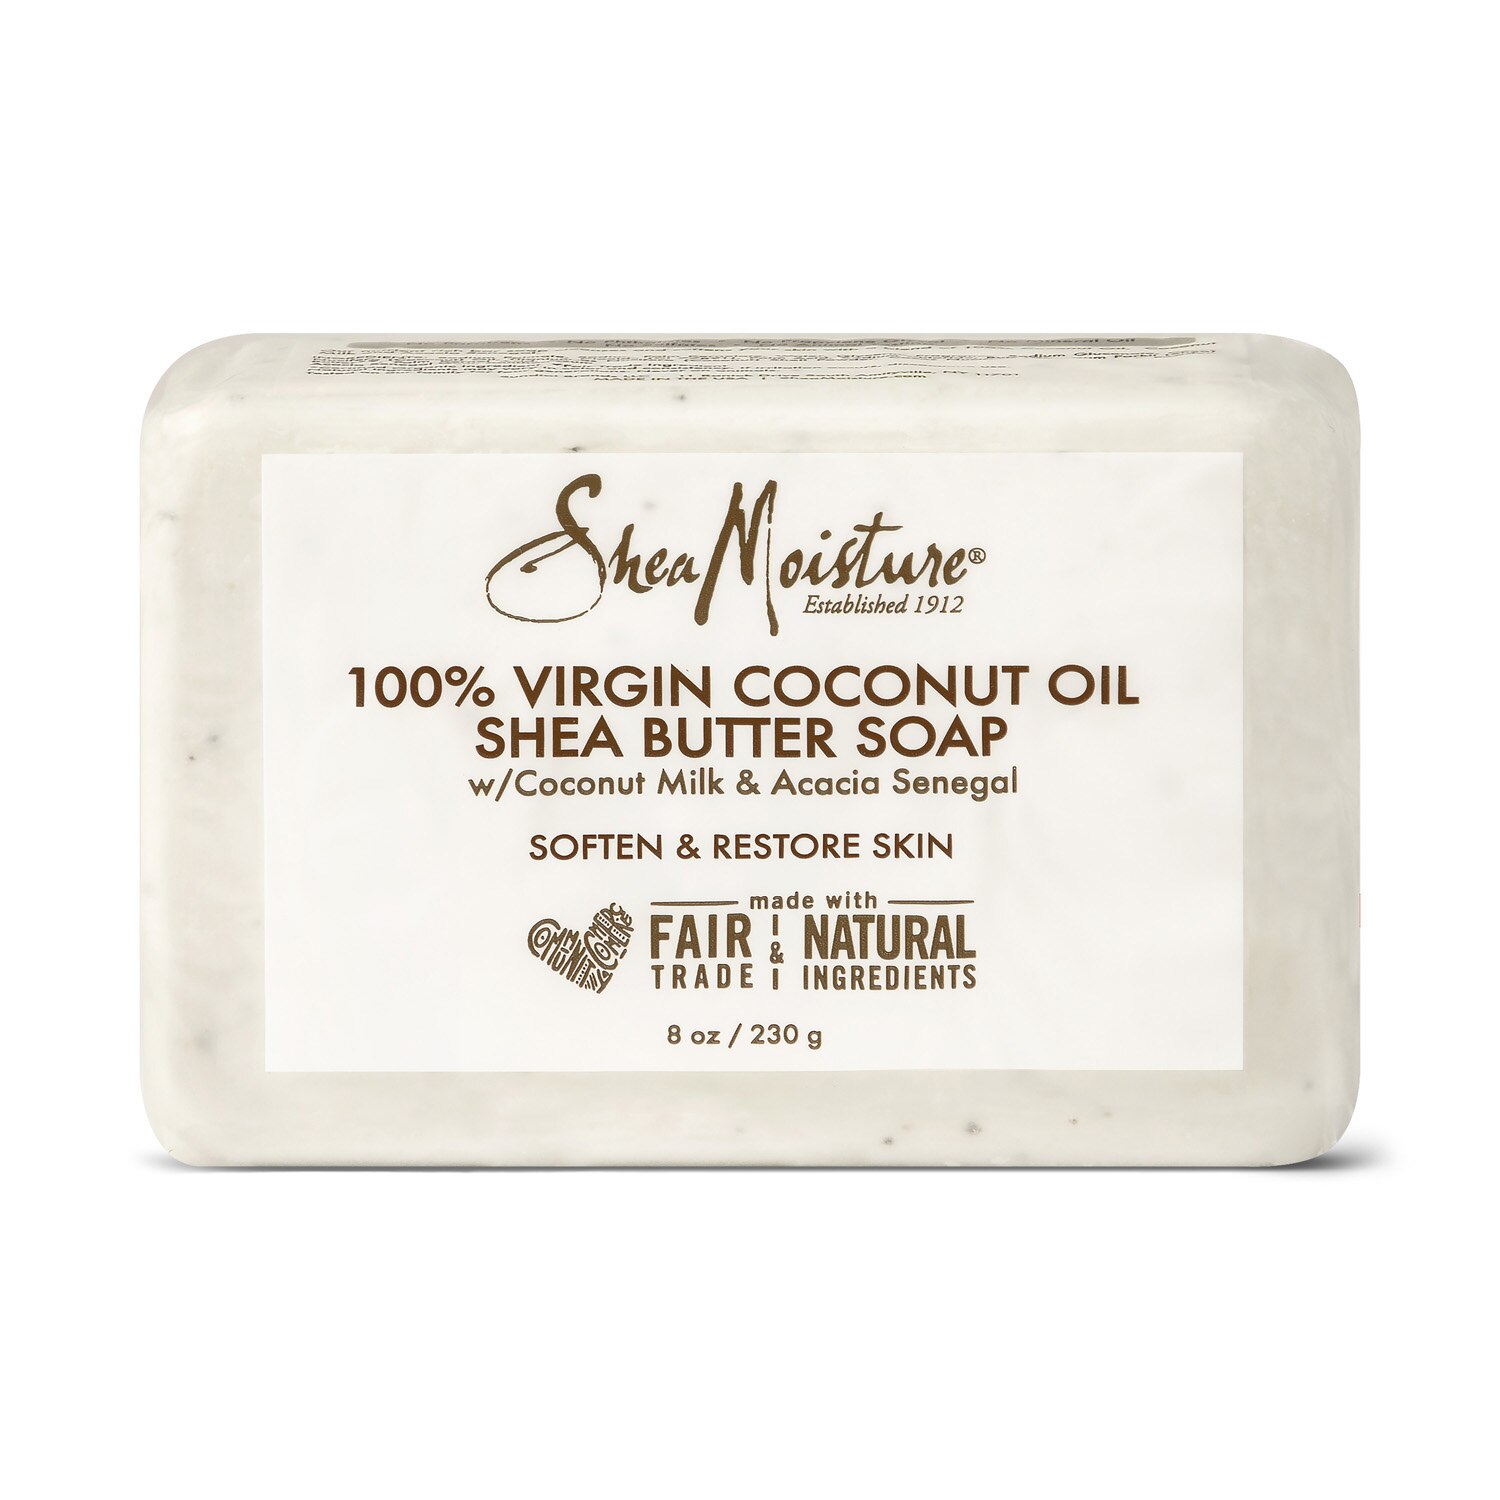 SheaMoisture Shea Butter Face & Body Bar Soap, 8 OZ